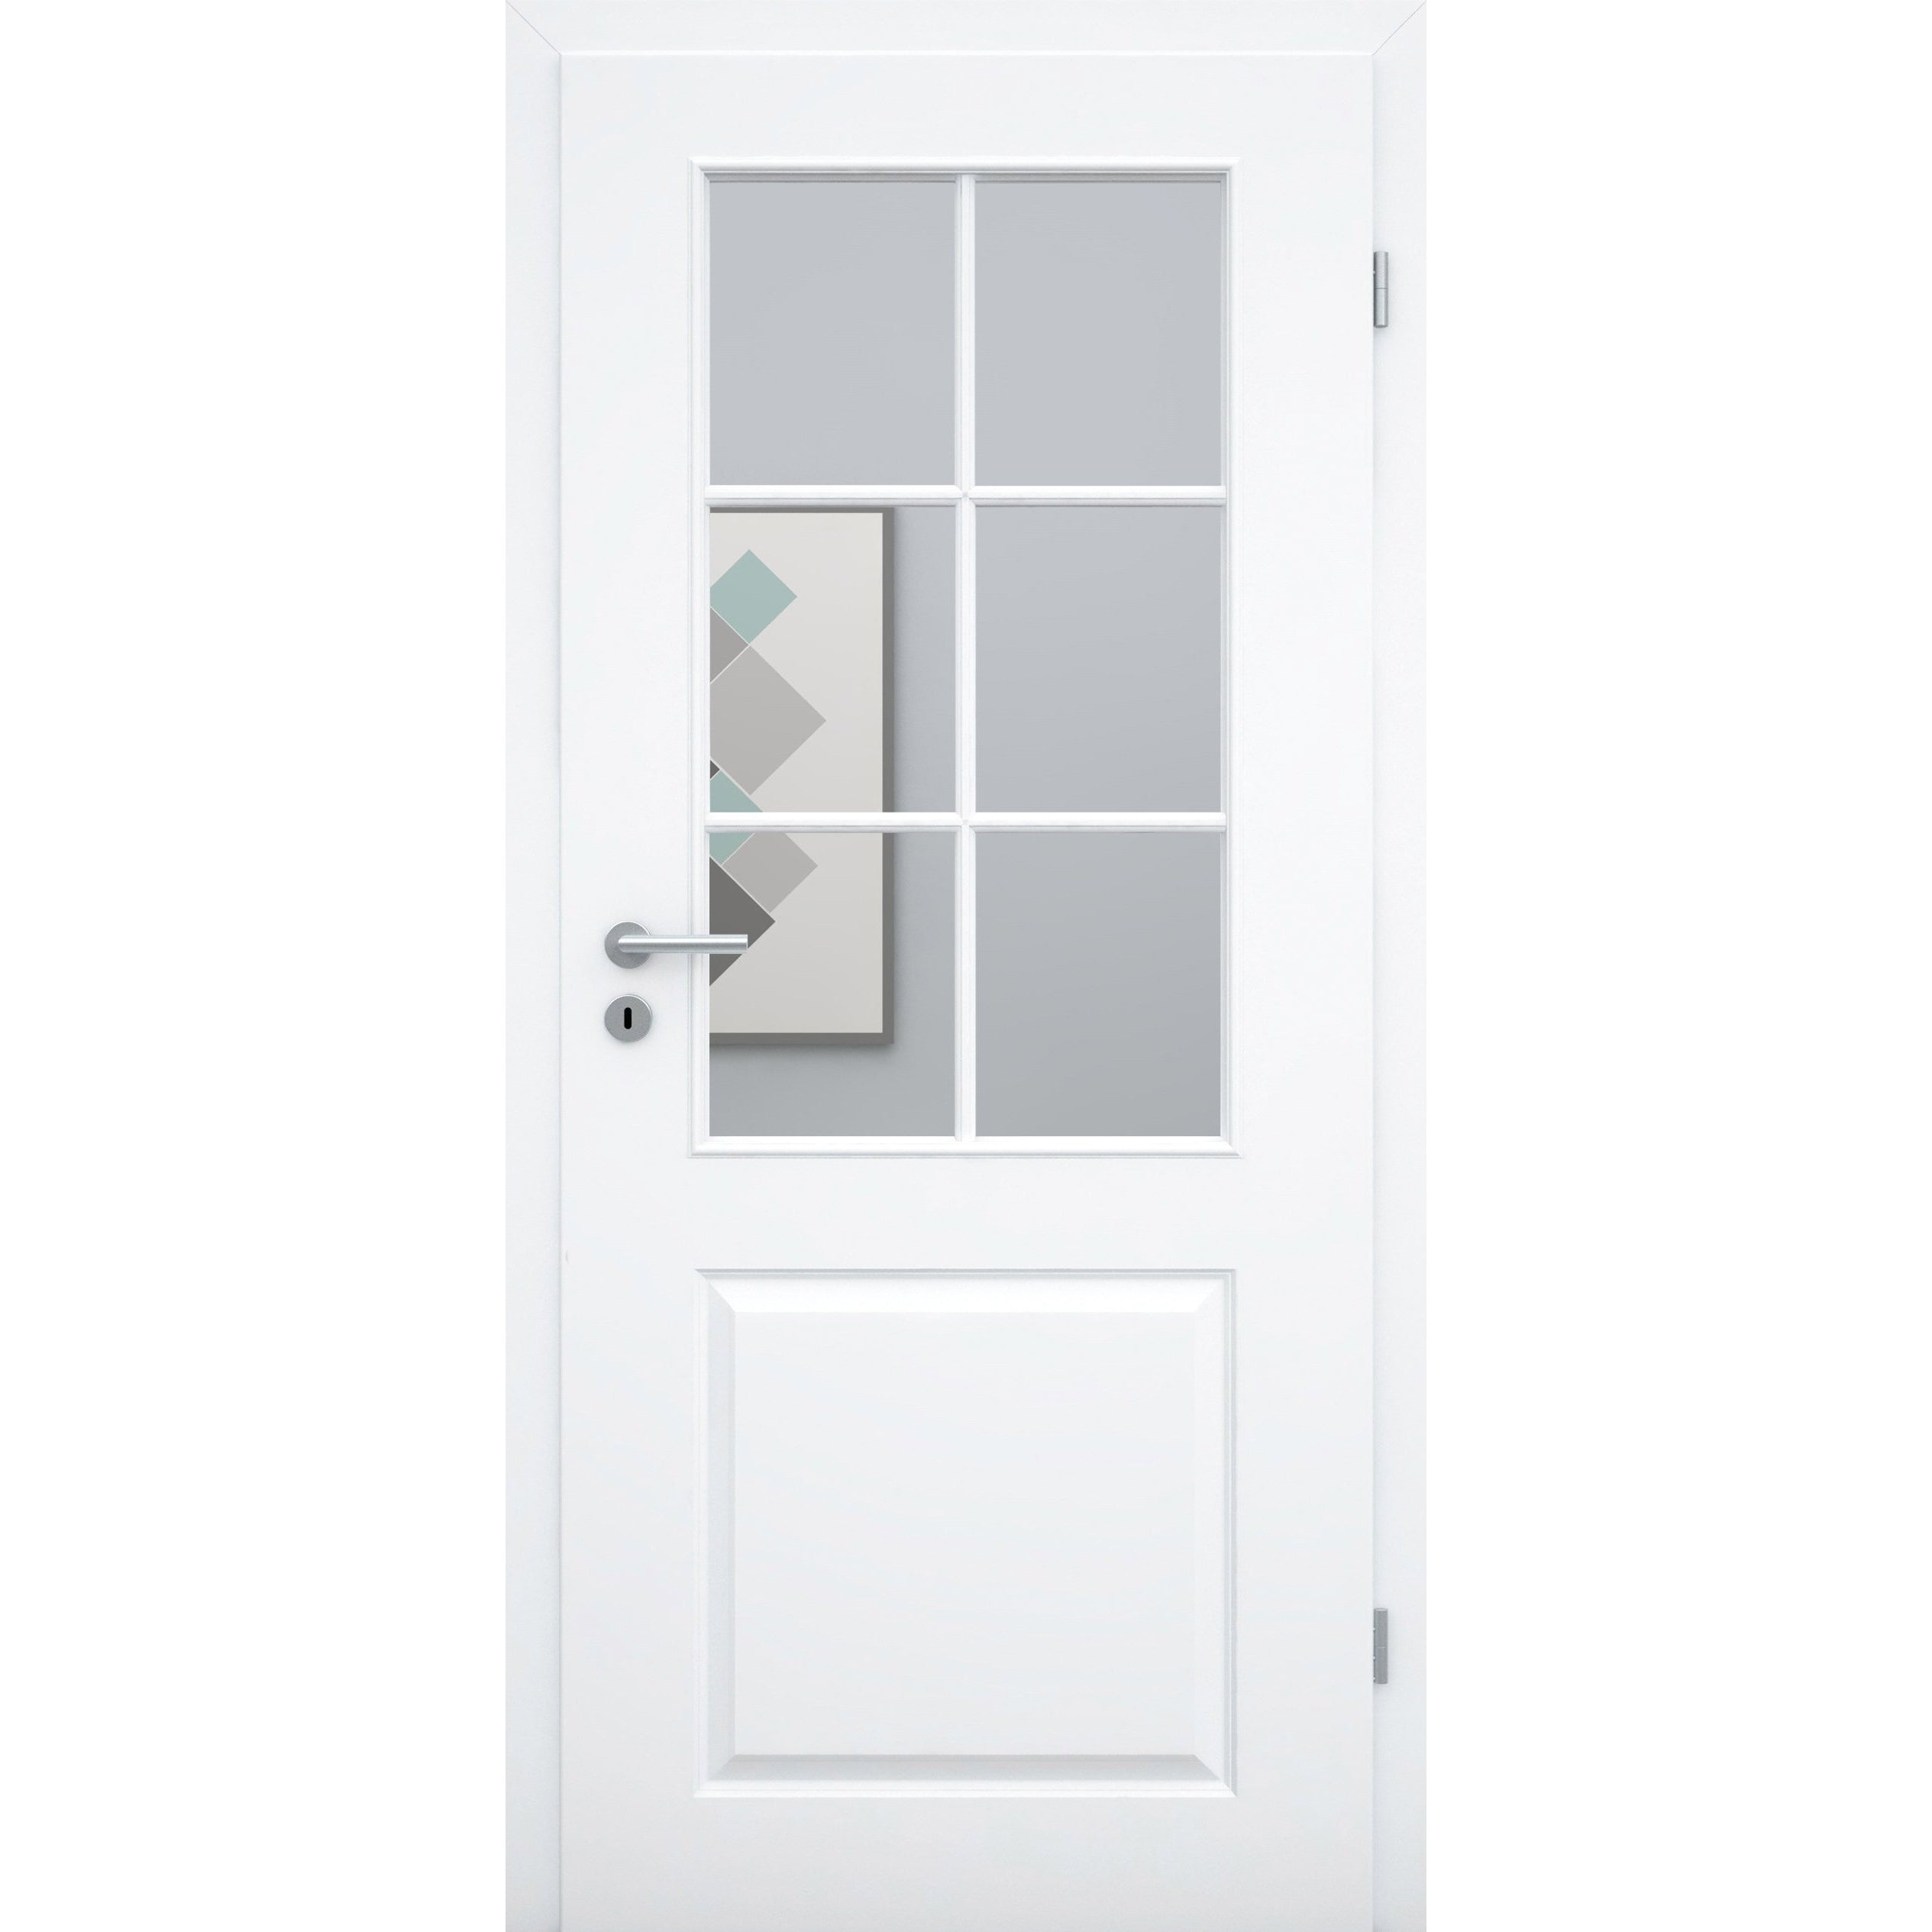 Zimmertür mit Lichtausschnitt mit Sprossenrahmen standard brillant-weiß 2 Kassetten Designkante - Modell Stiltür K23LASPS